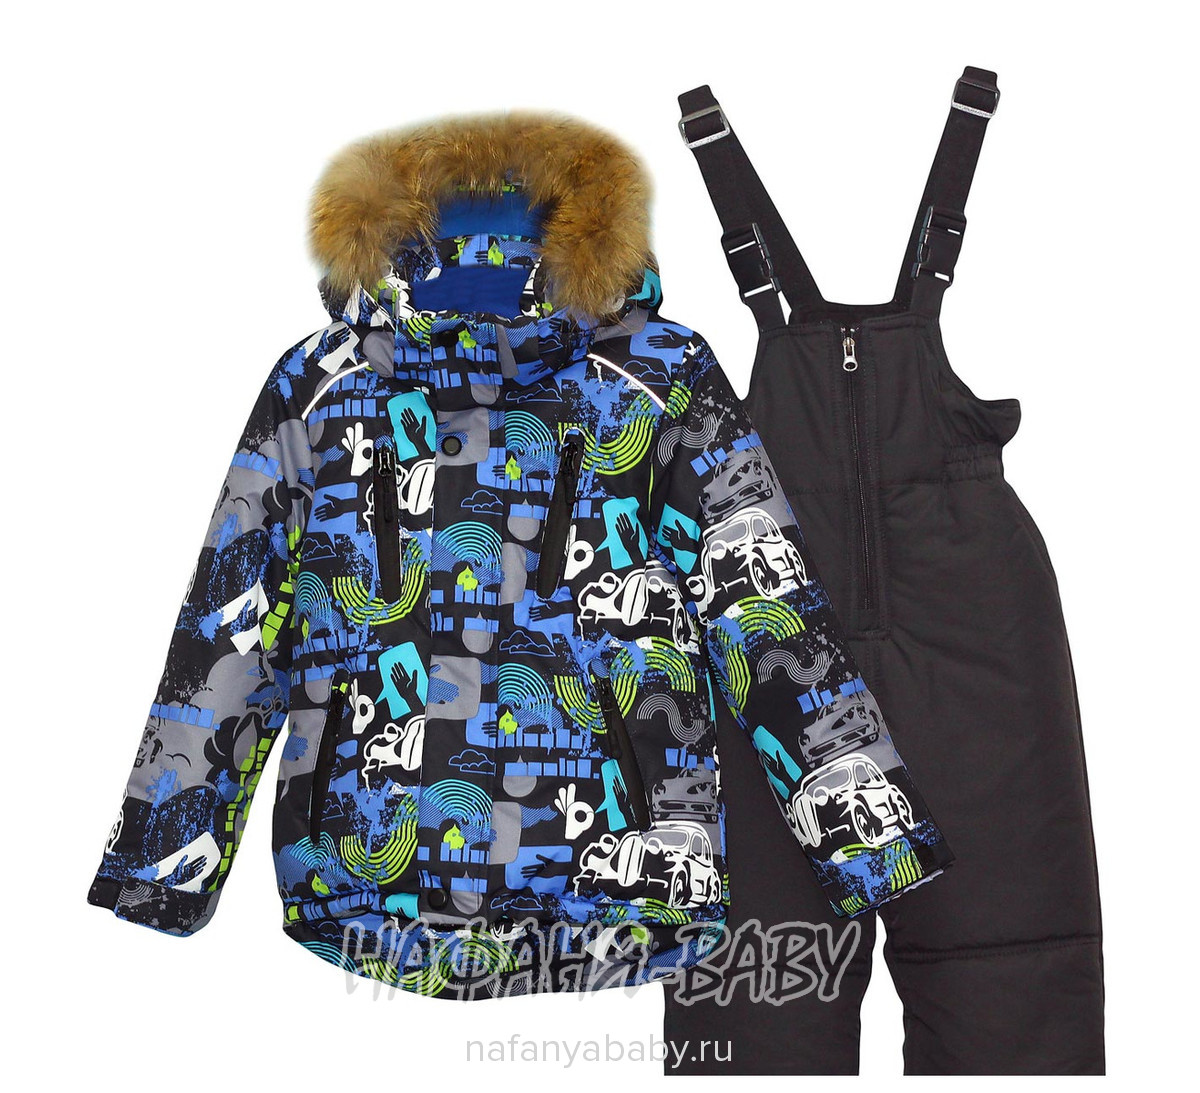 Зимний комплект (куртка+полукомбинезон) WEISHIDO, купить в интернет магазине Нафаня. арт: 1915.